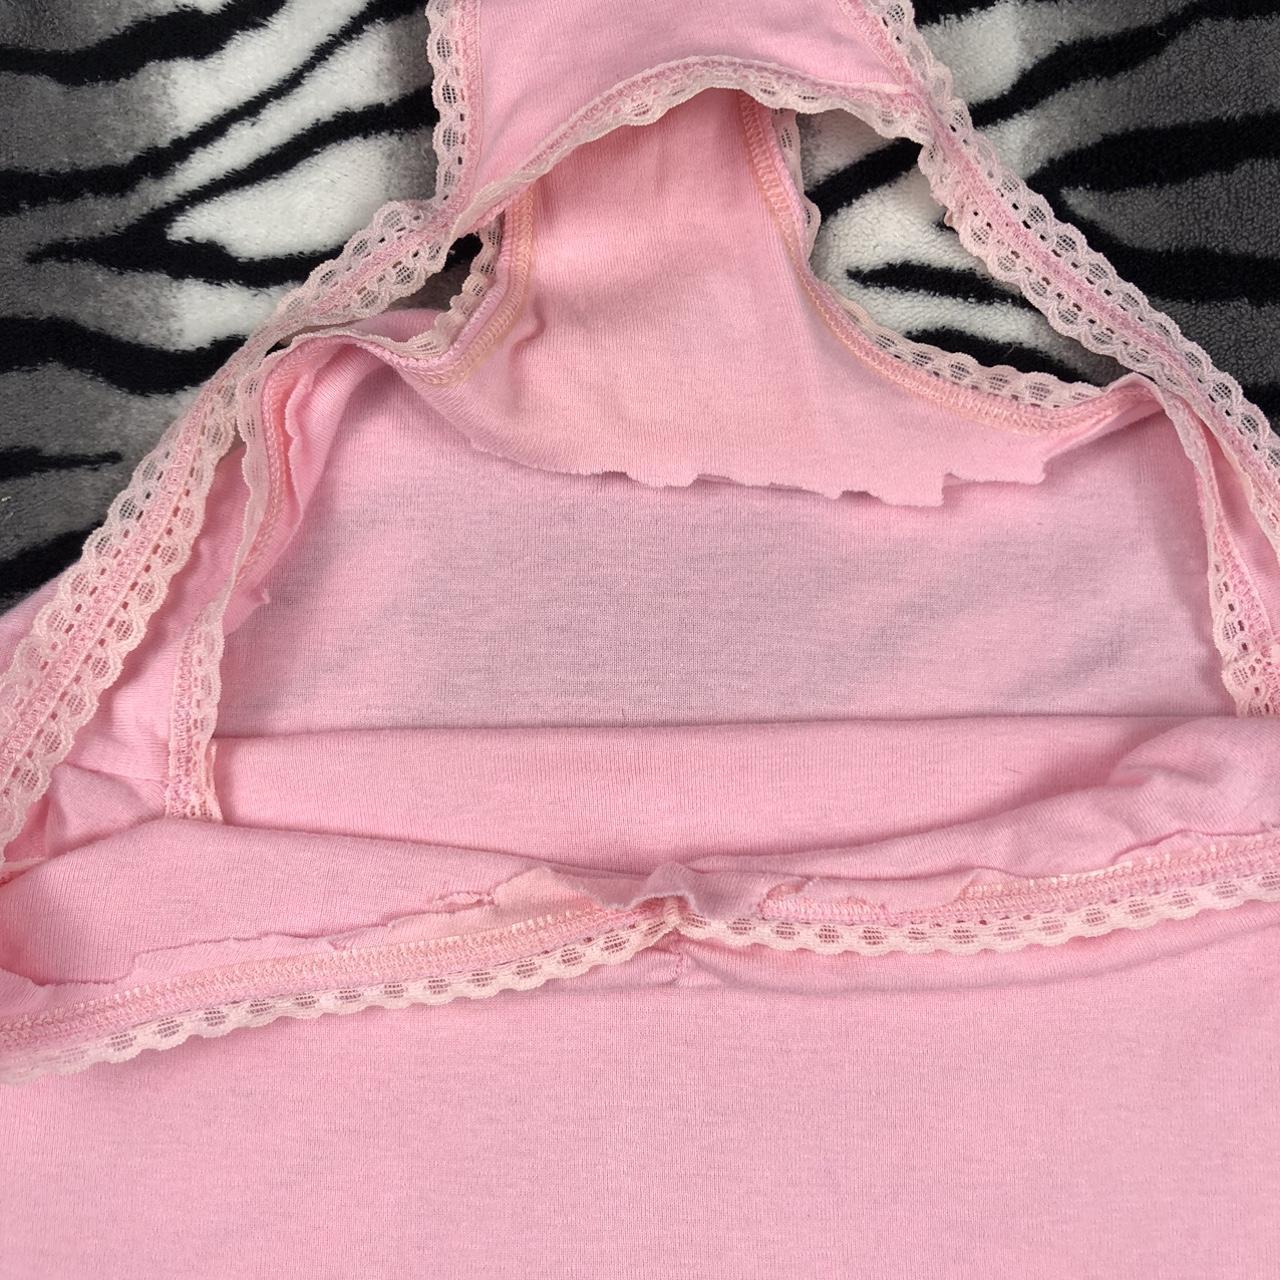  Y2K Victorias Secret Pink Camisole, •2000s cinched